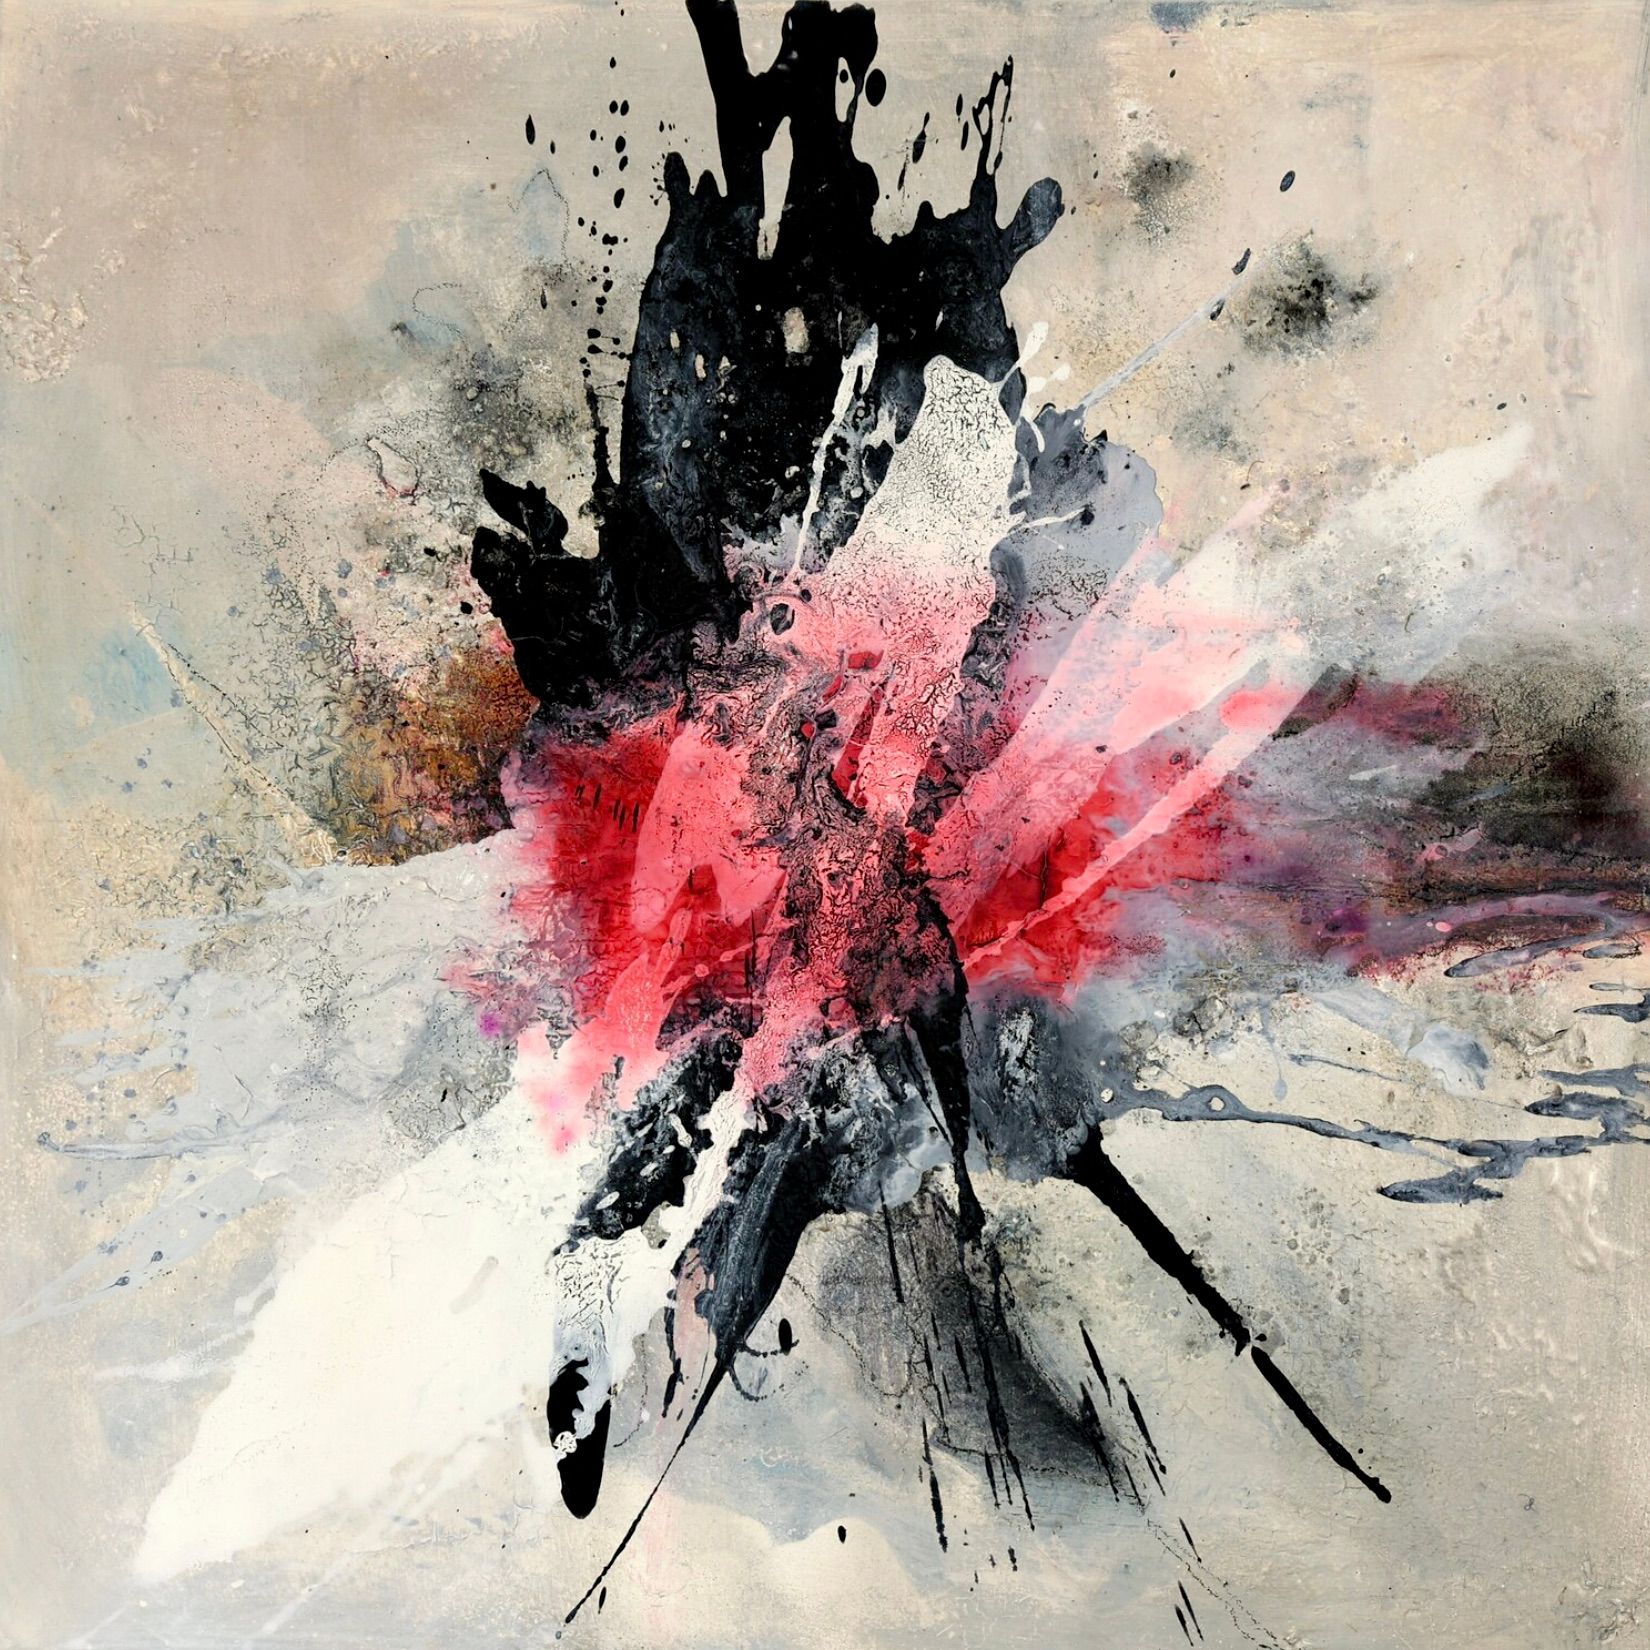 En la pintura expresionista, abstracta y colorista "Explosively 1" de Christa Haack, dominan los colores rojo, ping, negro y blanco, aparentemente explosivos, sobre un fondo gris-rosa asaltado.